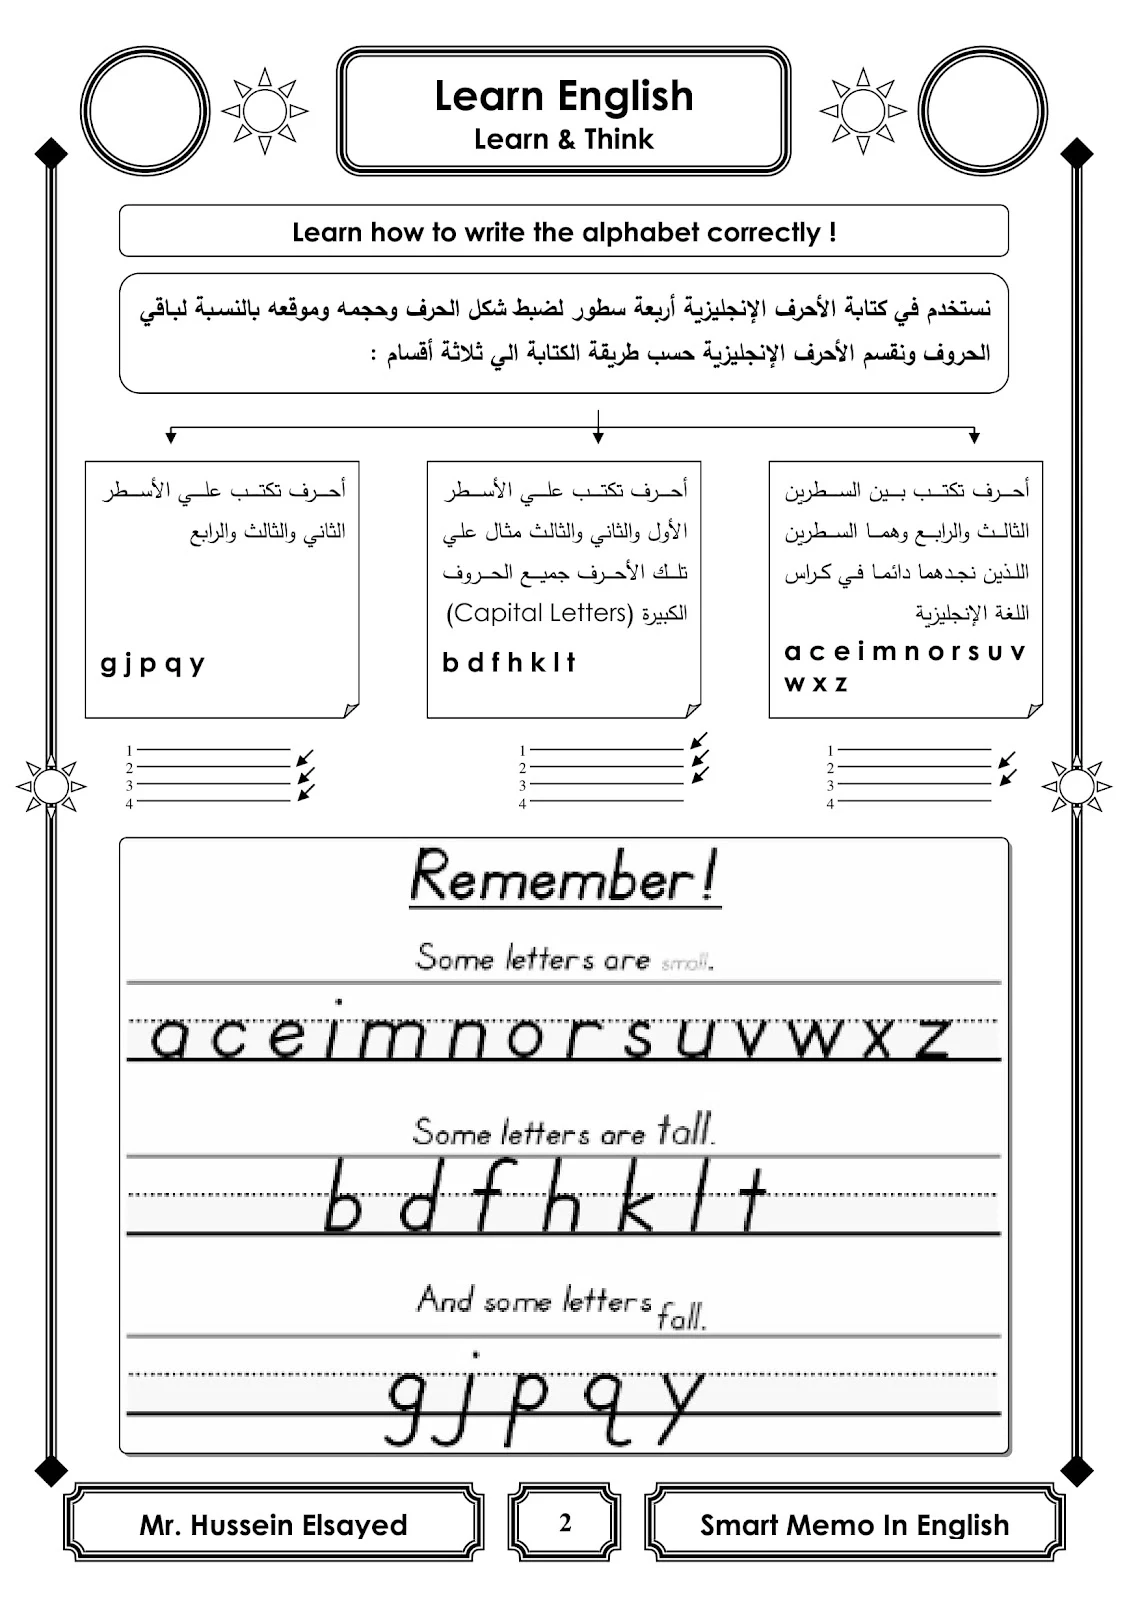 مذكرة تأسيس لغة انجليزية للمبتدأين والاطفال بسيطةجدا pdf جاهزة للطباعة